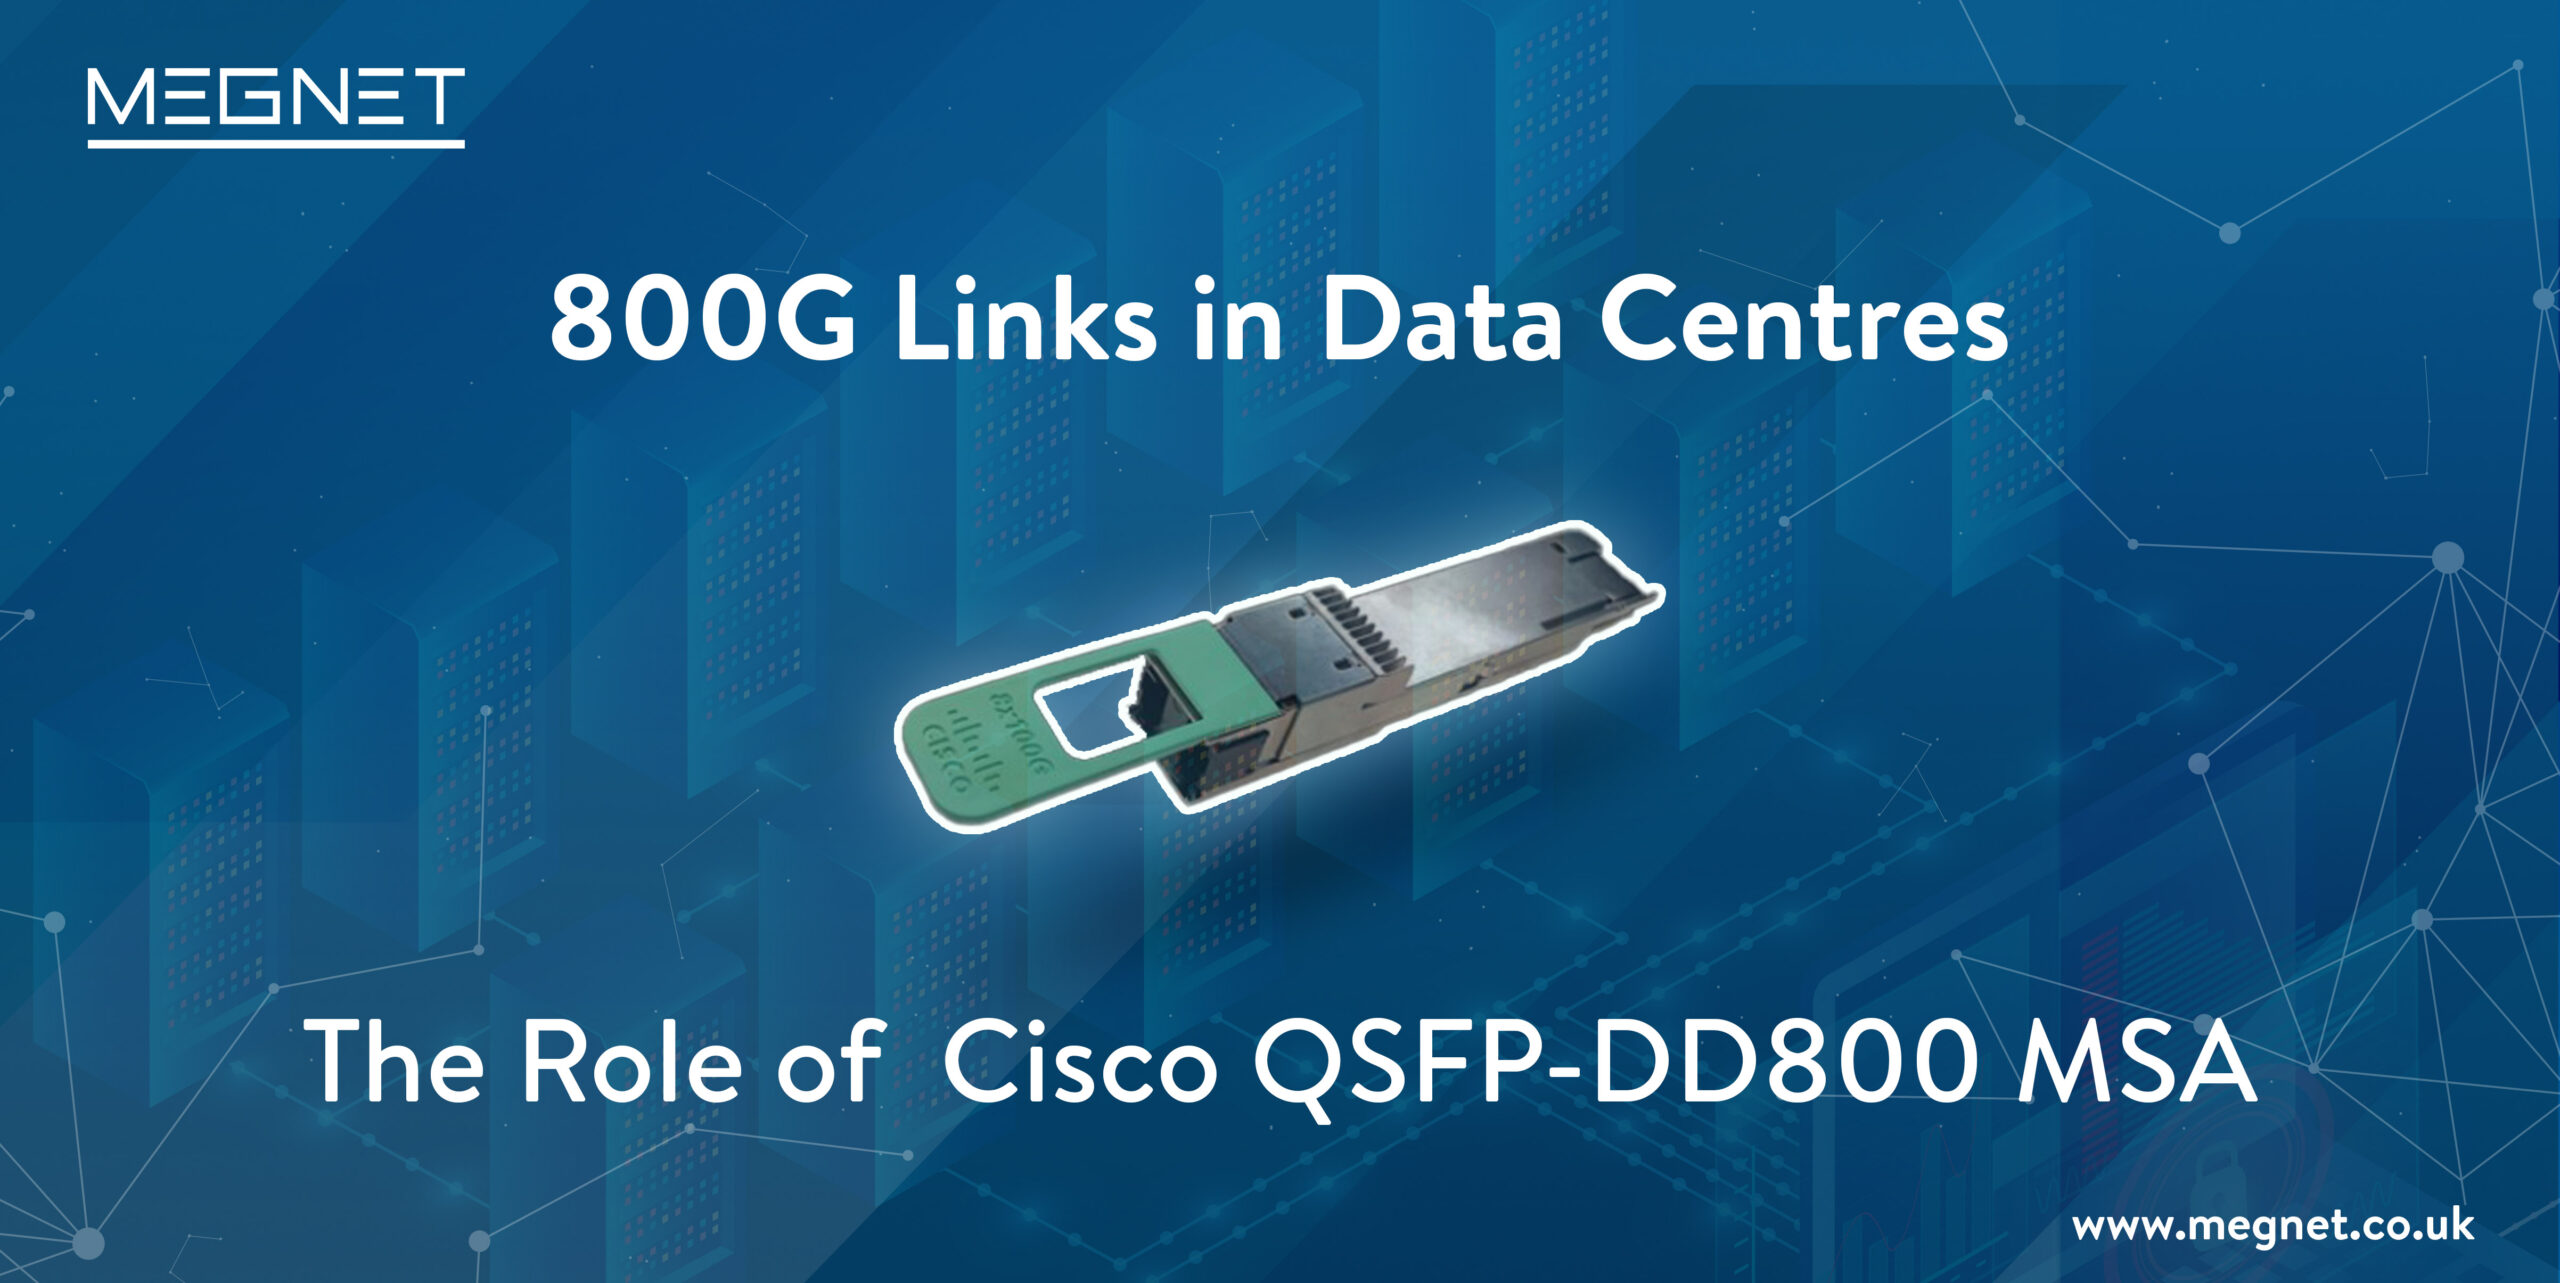 Cisco QSFP-DD800 MSA 